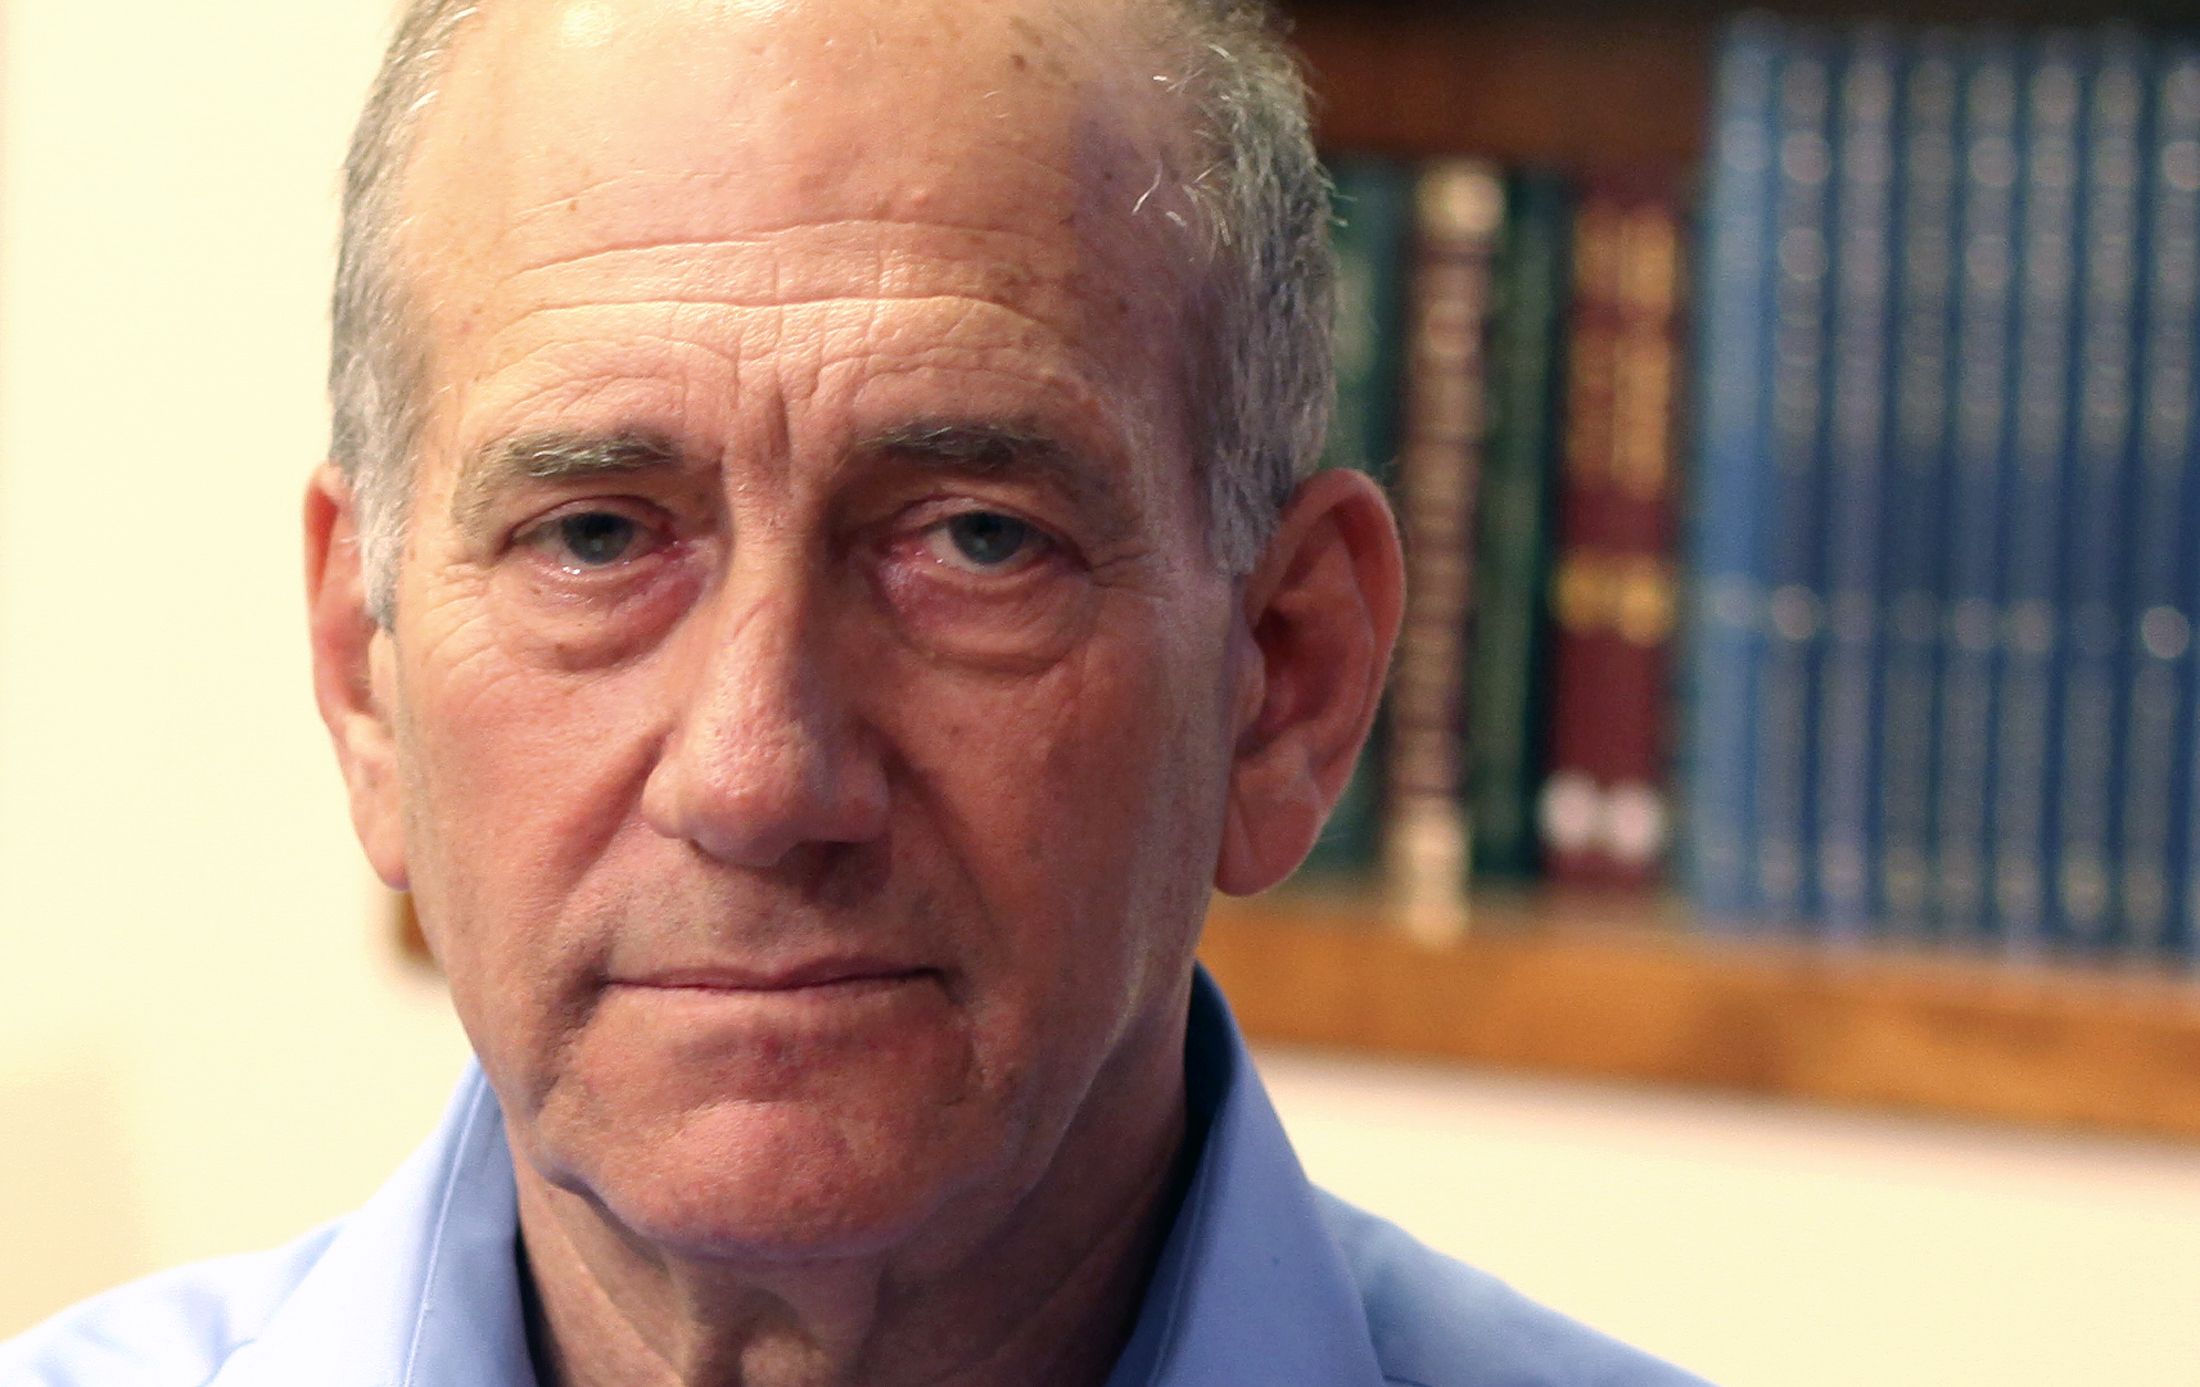 ehud-olmert-former-israeli-prime-minister-sentenced-to-8-months-in